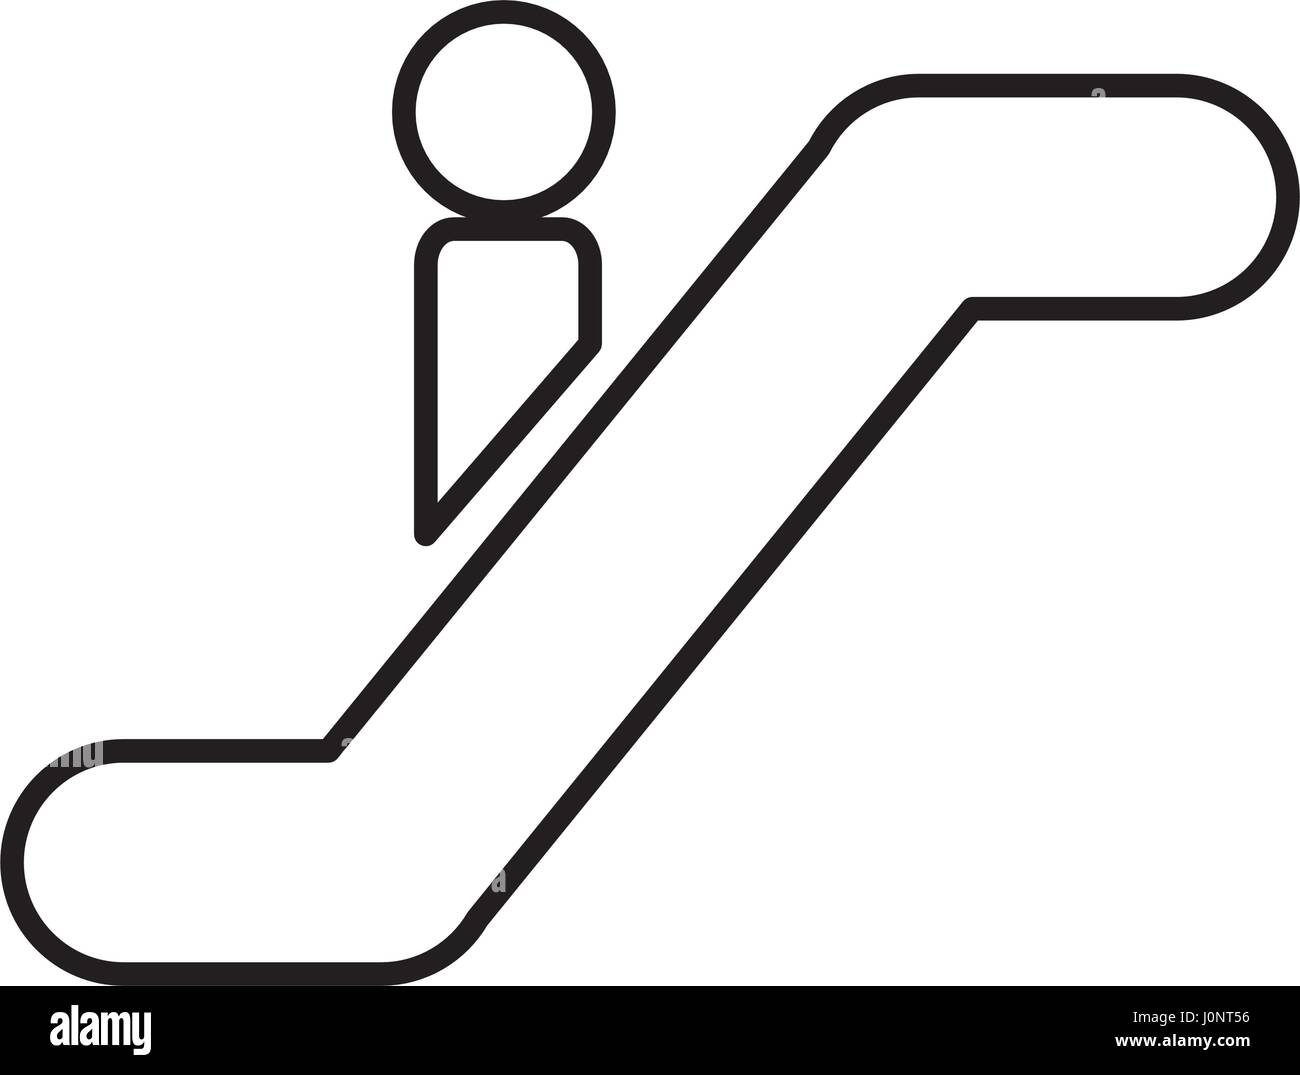 person silhouette in escalators Stock Vector